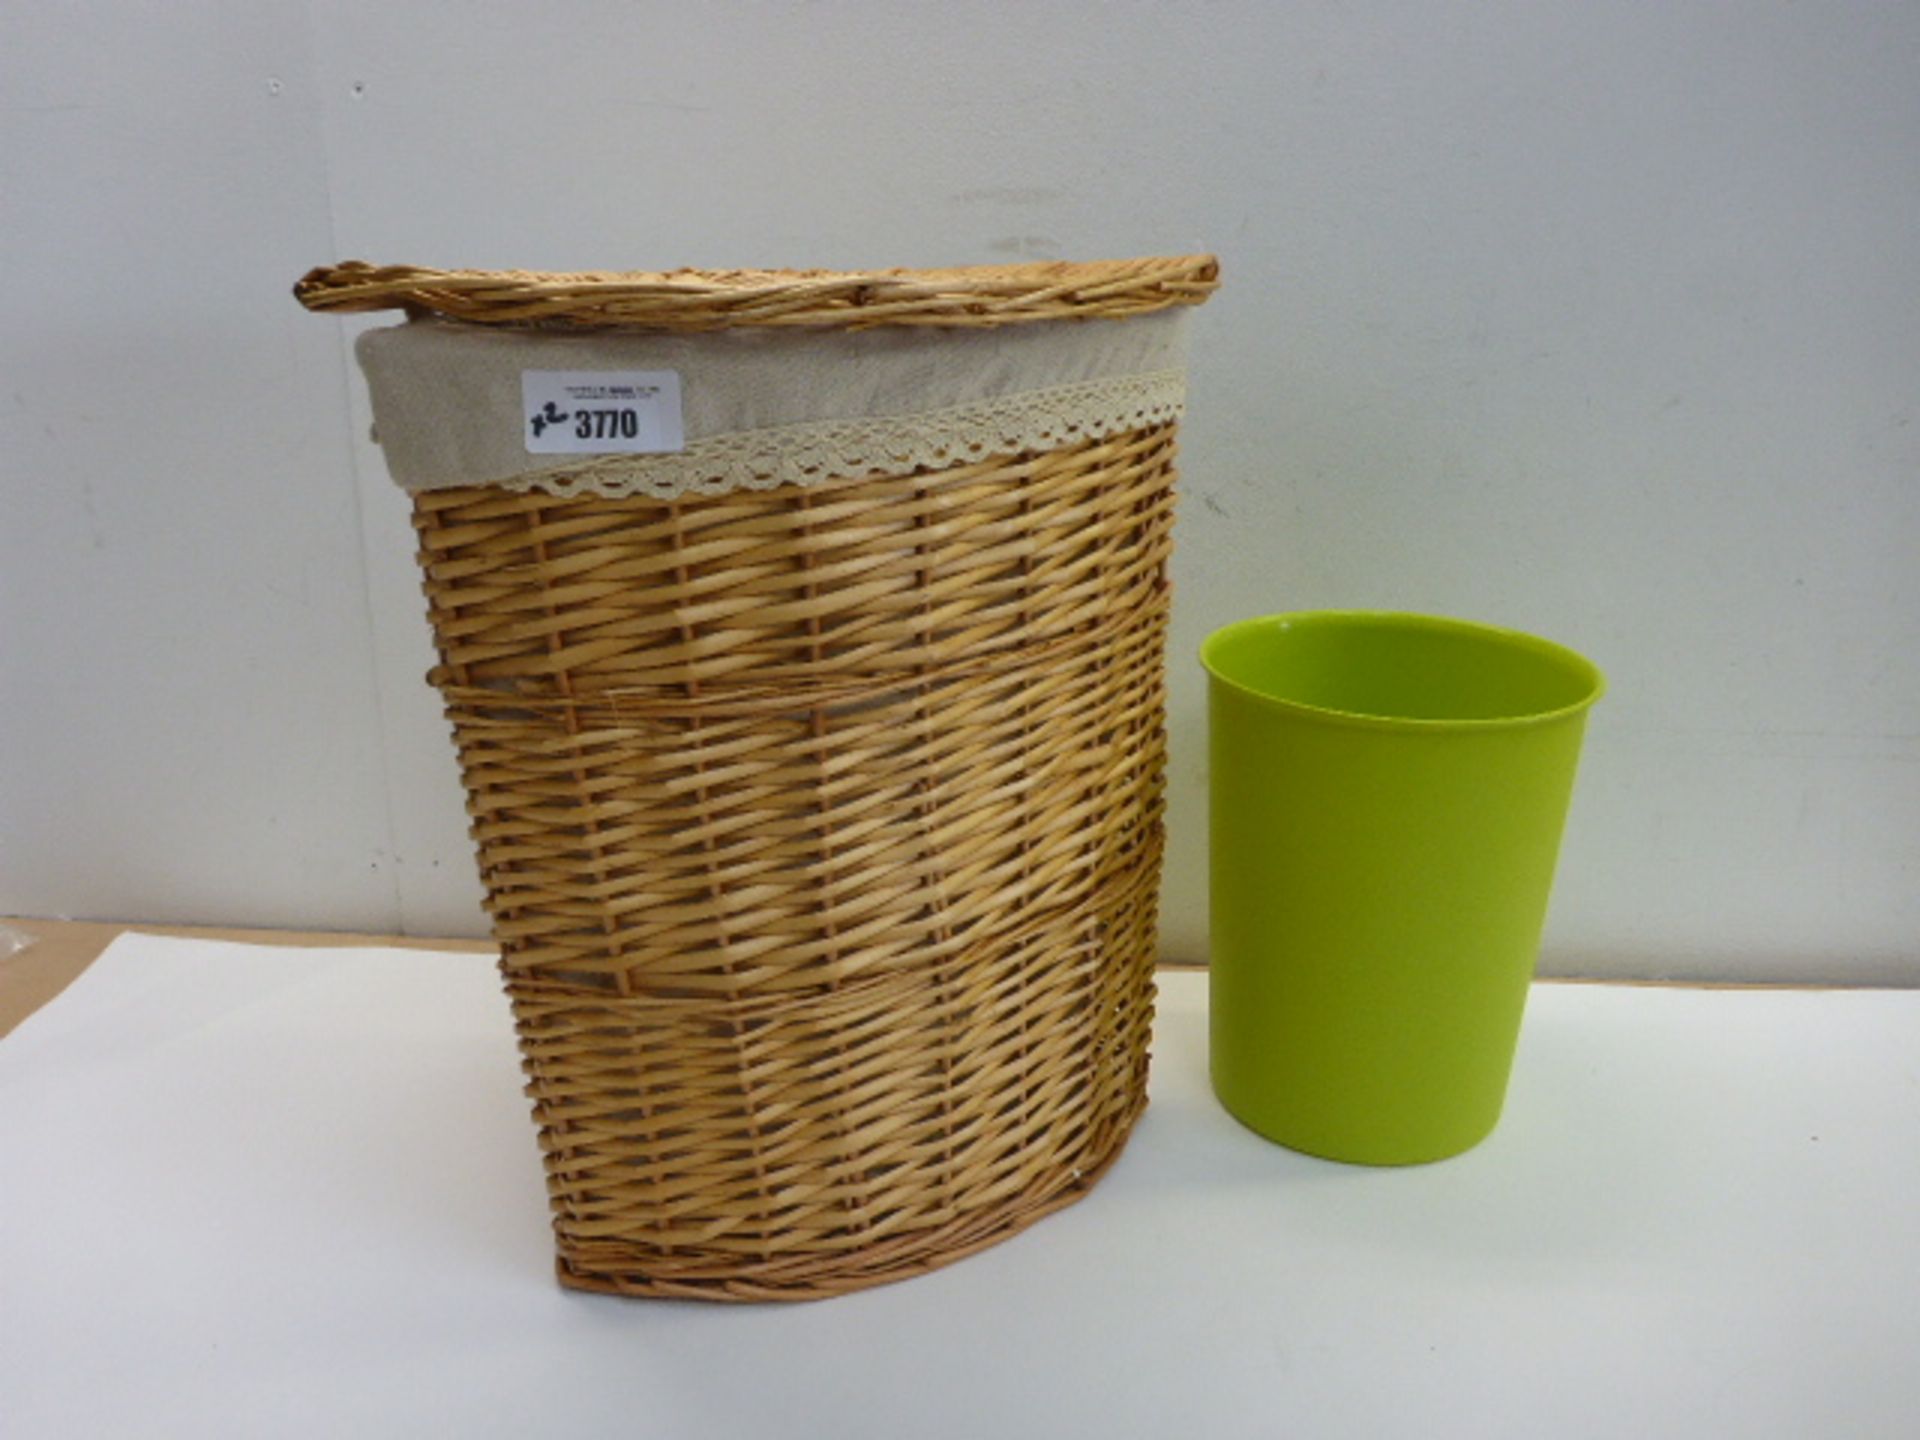 Wicker laundry basket and green waste paper bin